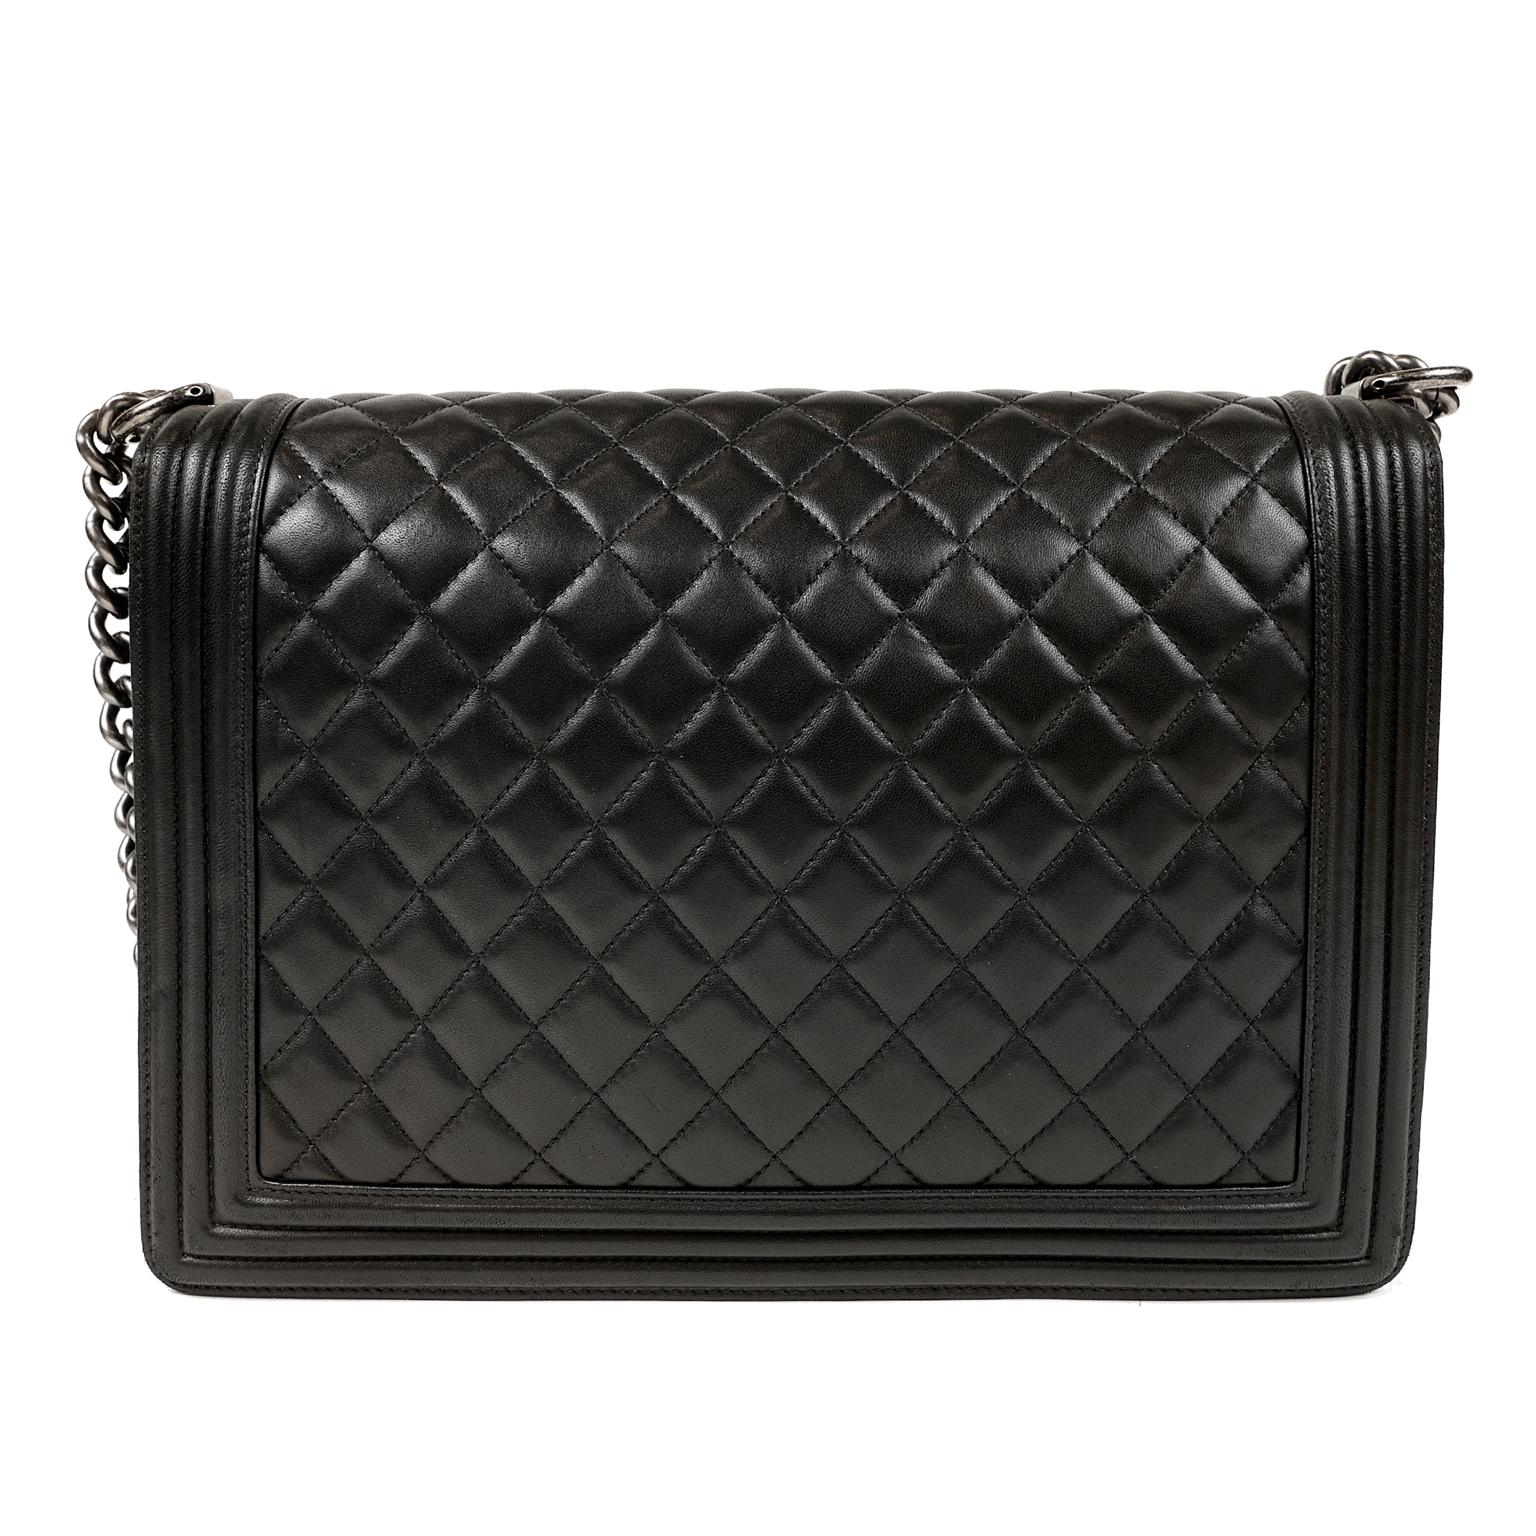 Women's Chanel Black Lambskin Large Boy Bag